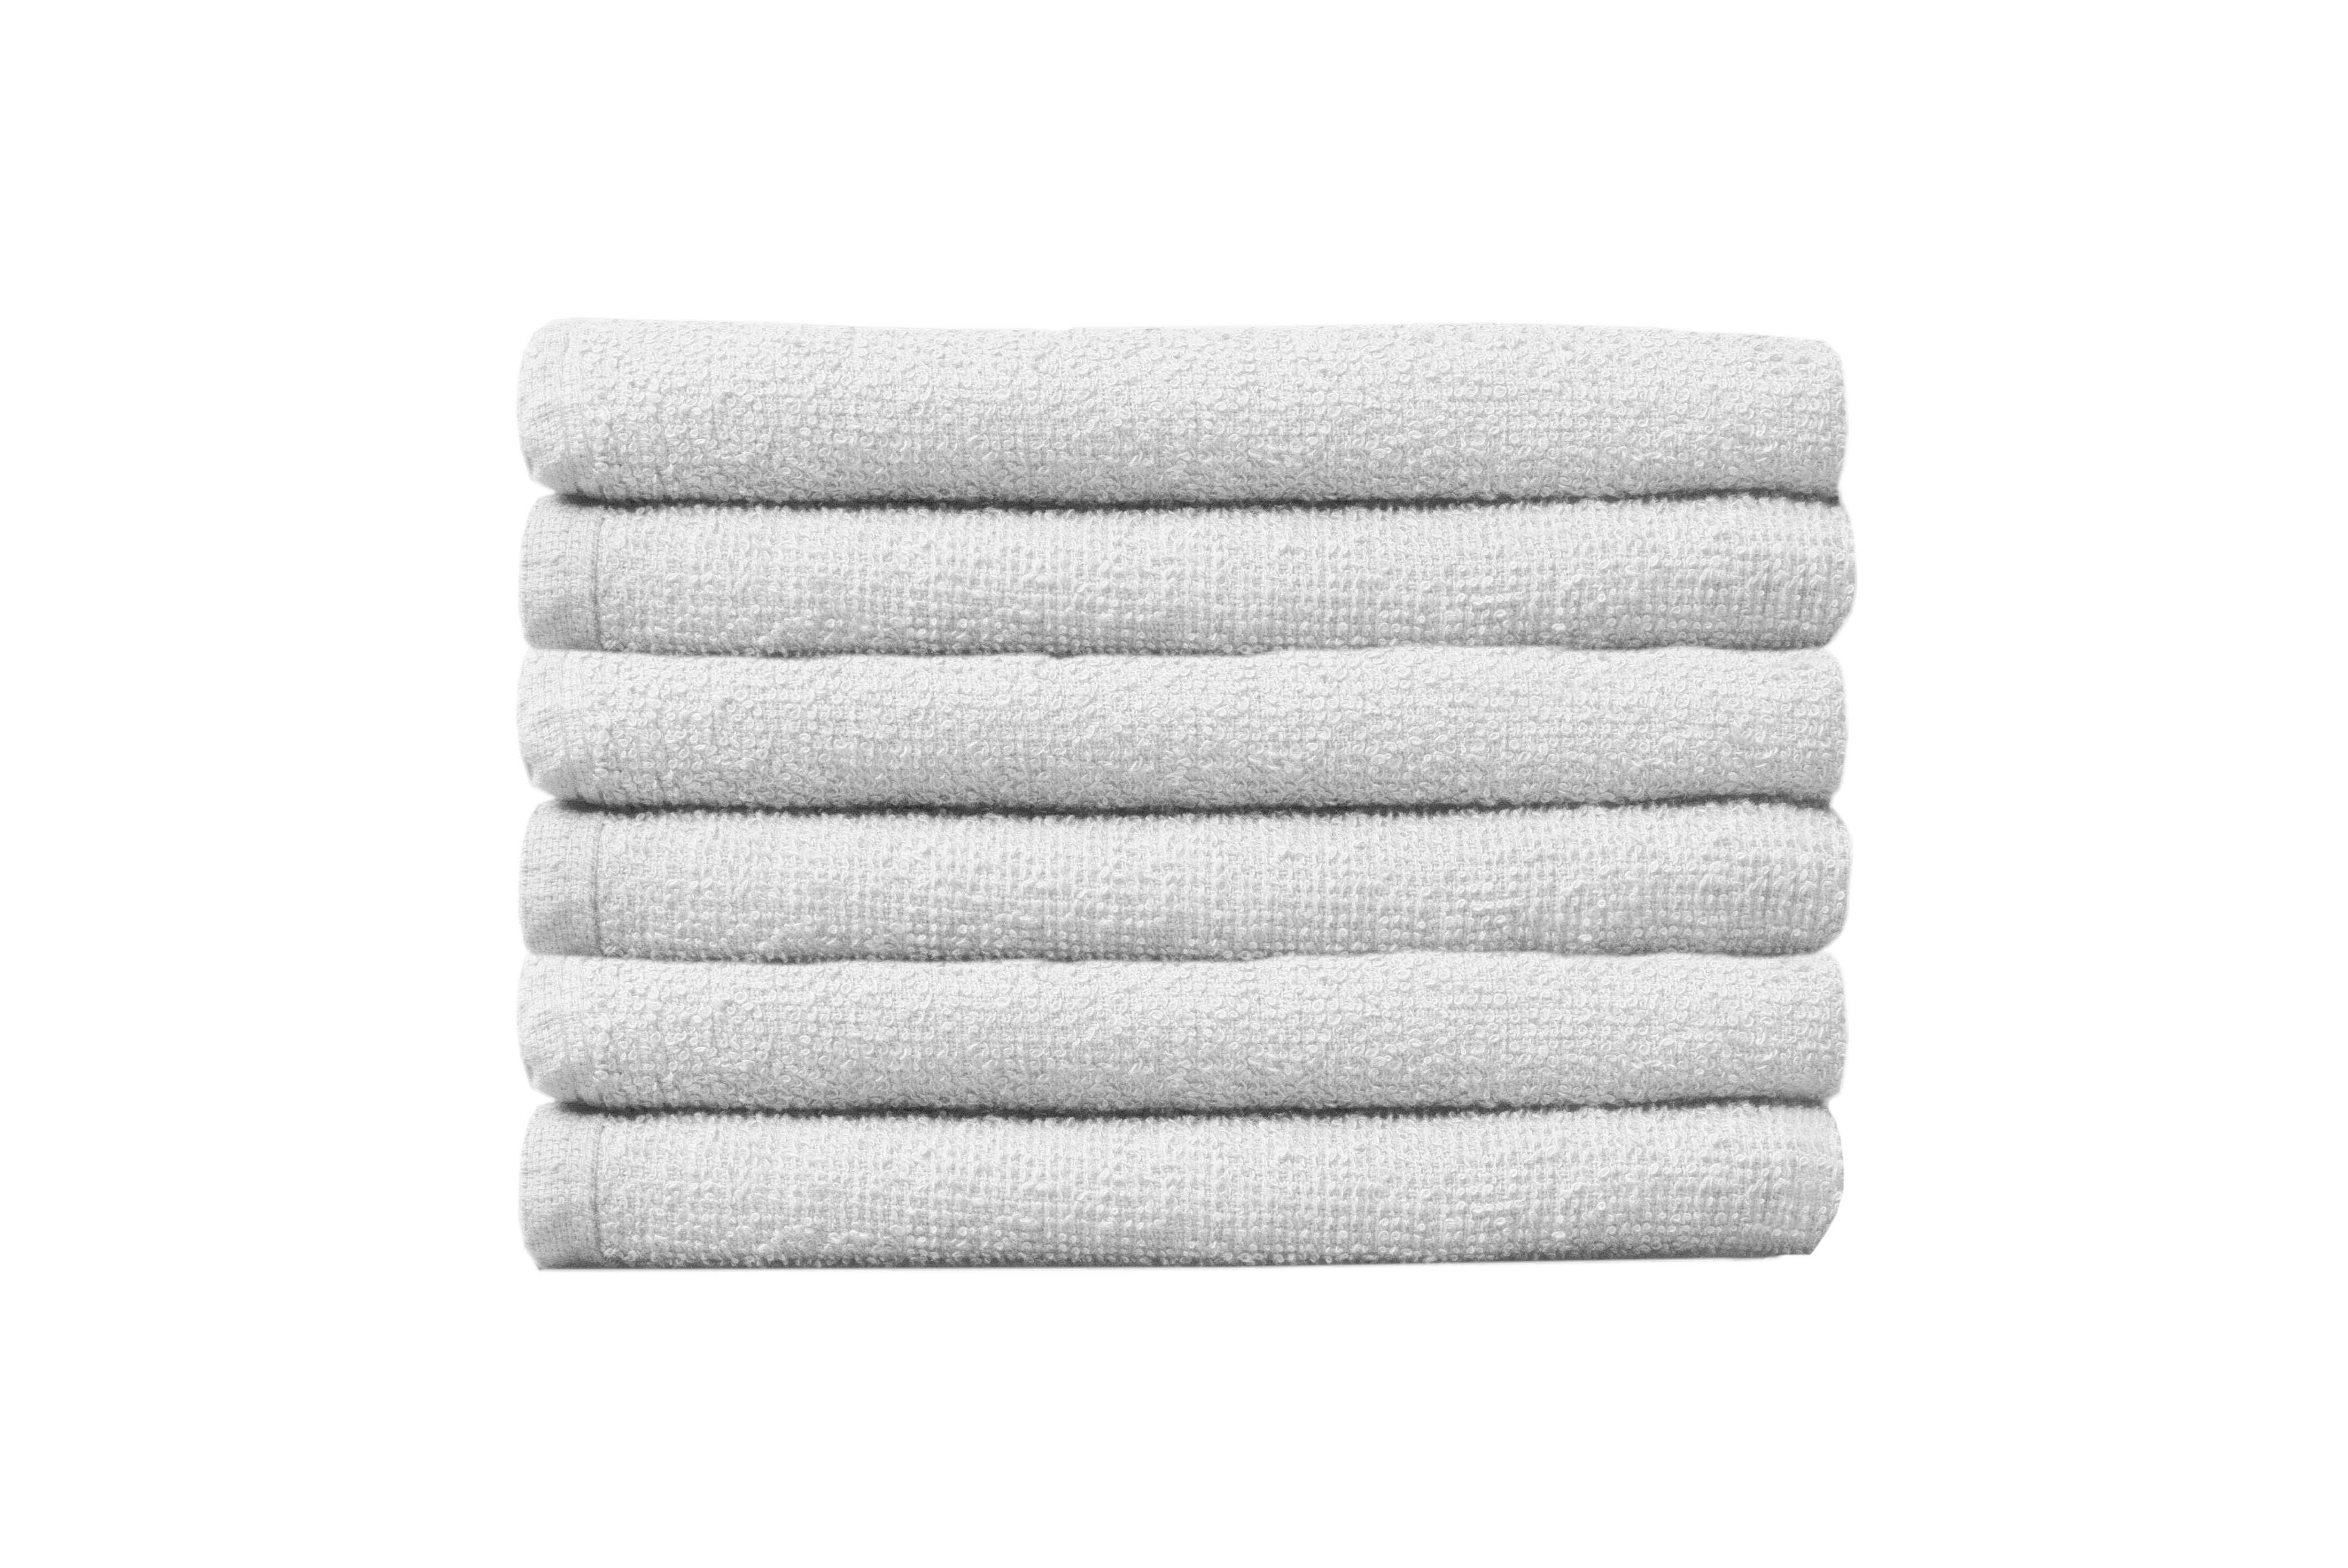 Partex Bleach Guard Legacy™ Towels